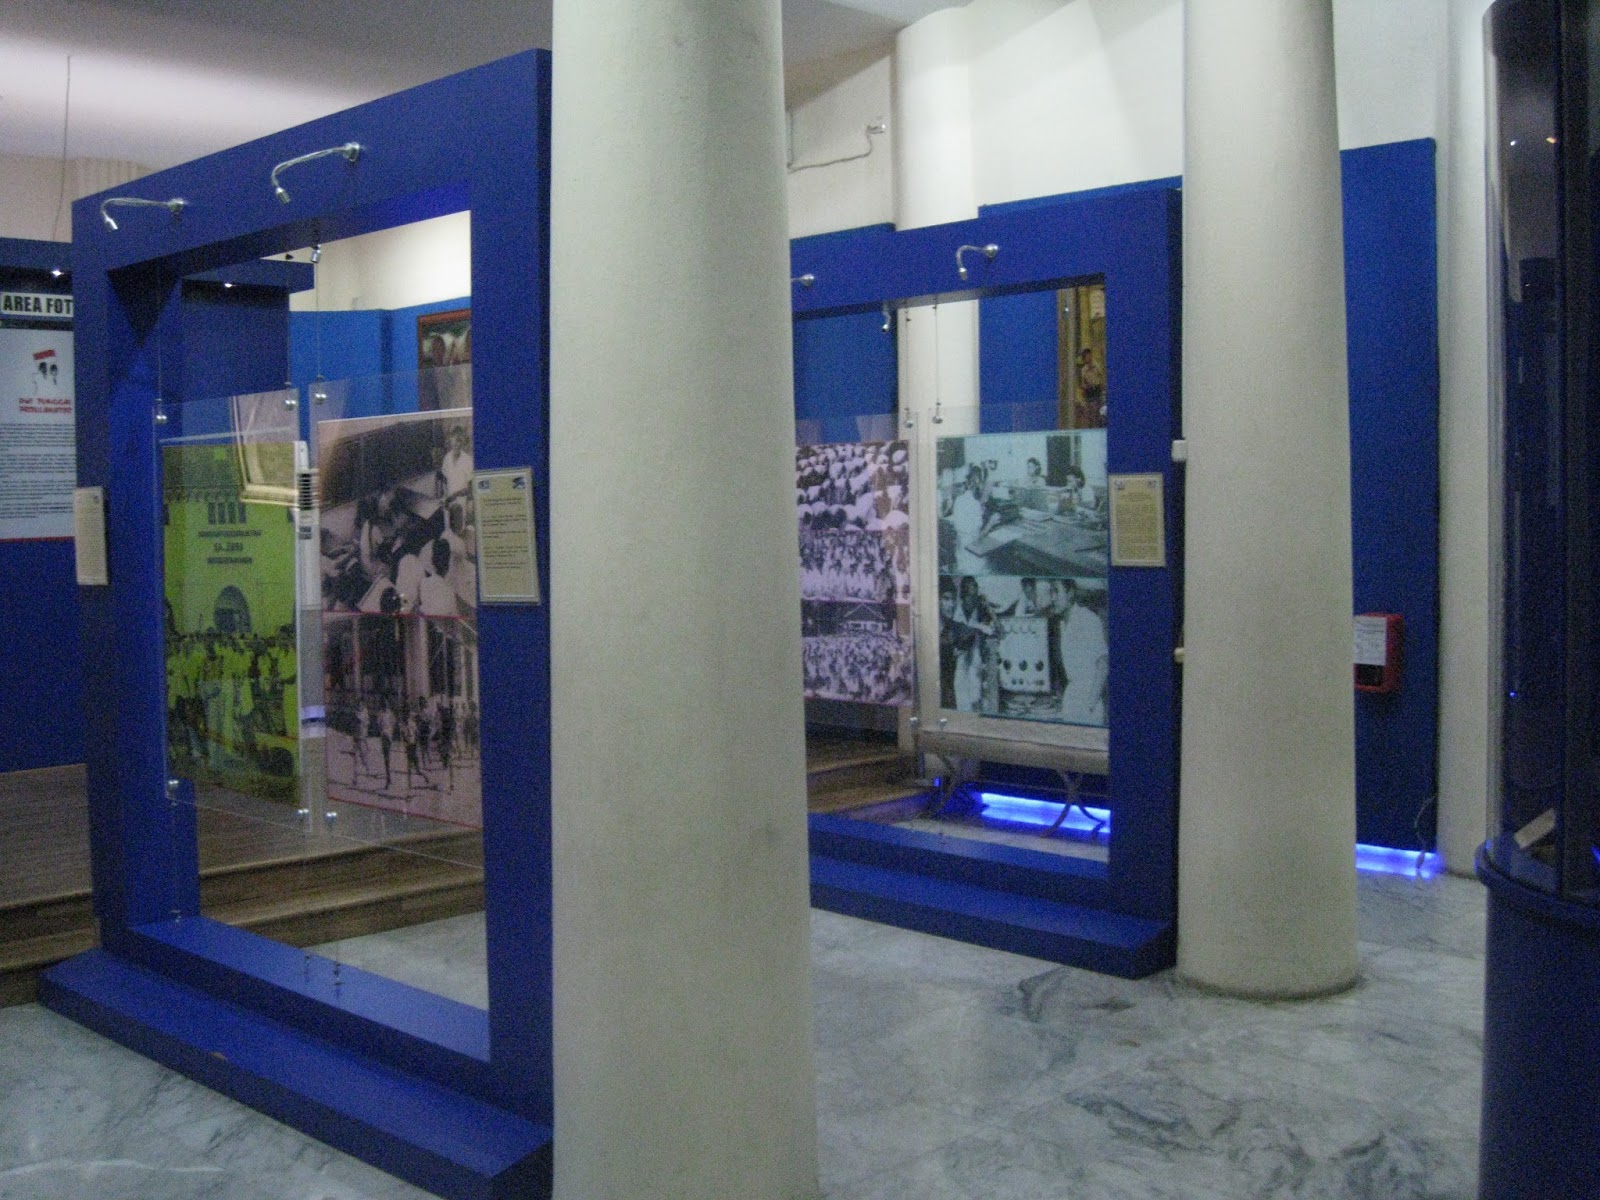 Letsgo2museum: Museum Joang 45